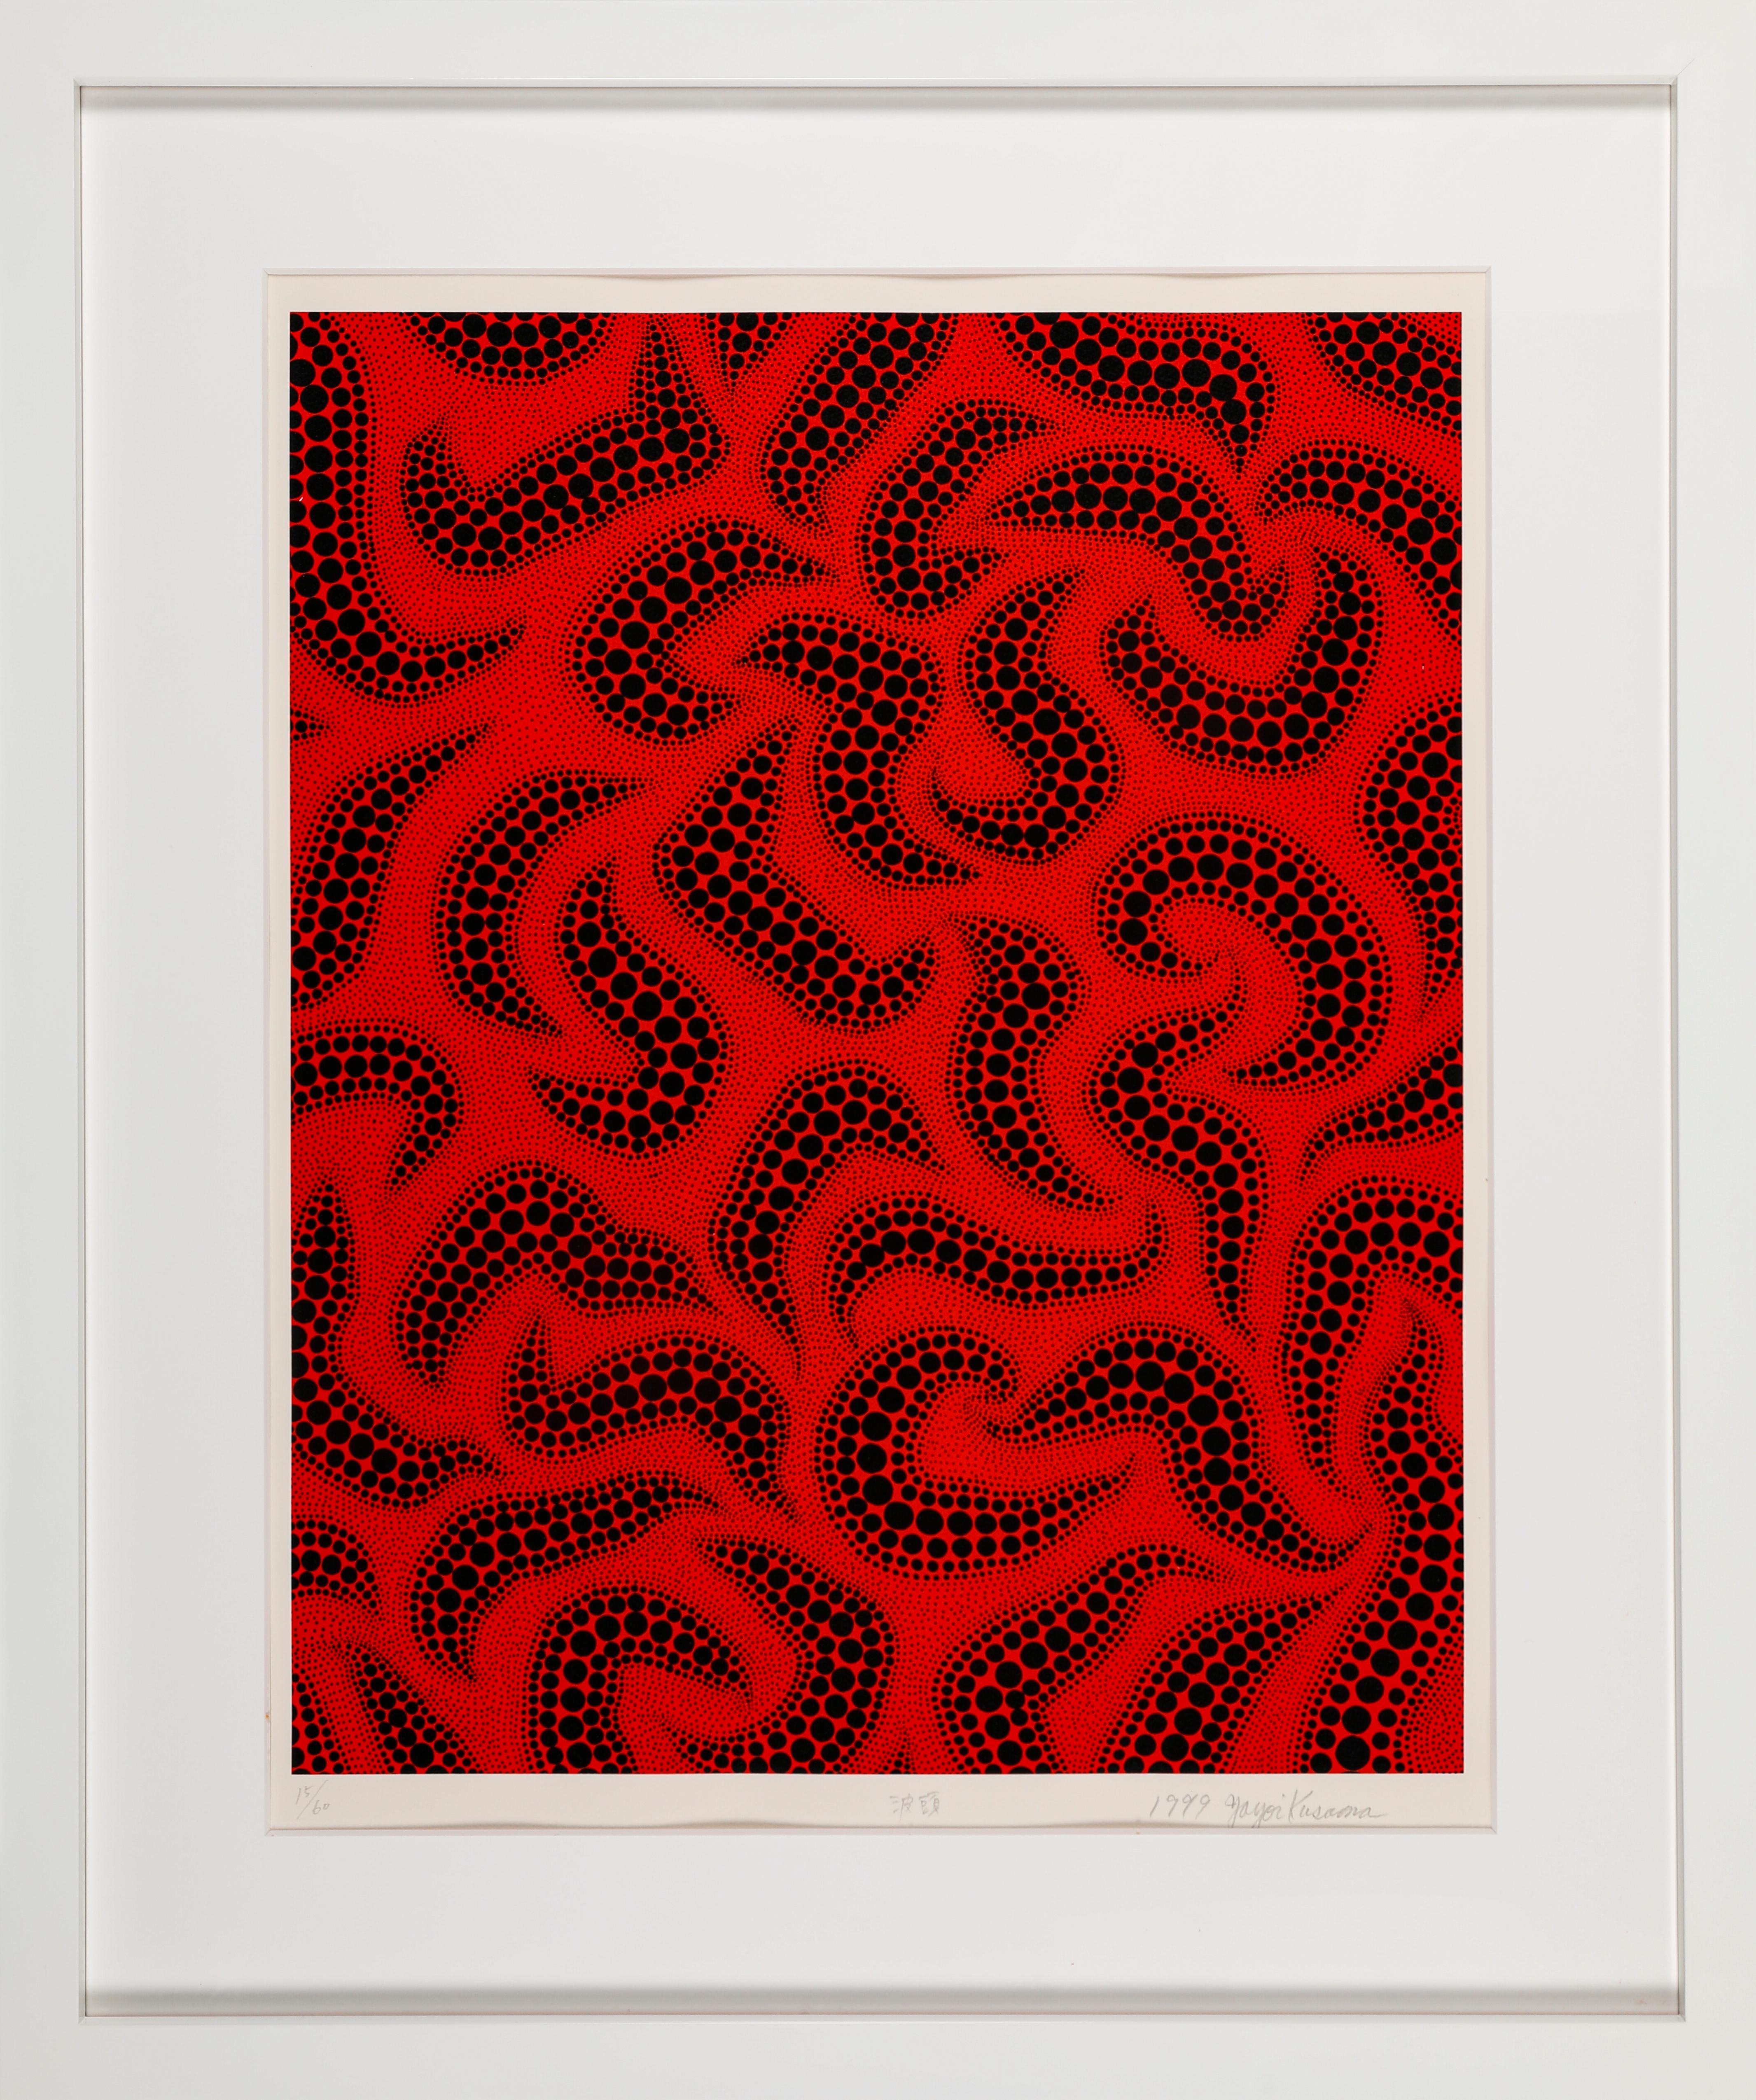 Yayoi Kusama 
Wave Crest (1999). Auflage 15/60
Siebdruck
(3 Bildschirme, 2 Farben, 3 Durchläufe)
59,7 x 47,8 cm (Bild) 
76x 56.5cm  (Blatt)
Auflage 60 + 6 Künstler-Proofs + 5 Drucker-Proofs 
Veröffentlicht 1999 auf Velin d'Arches Papier von Okabe